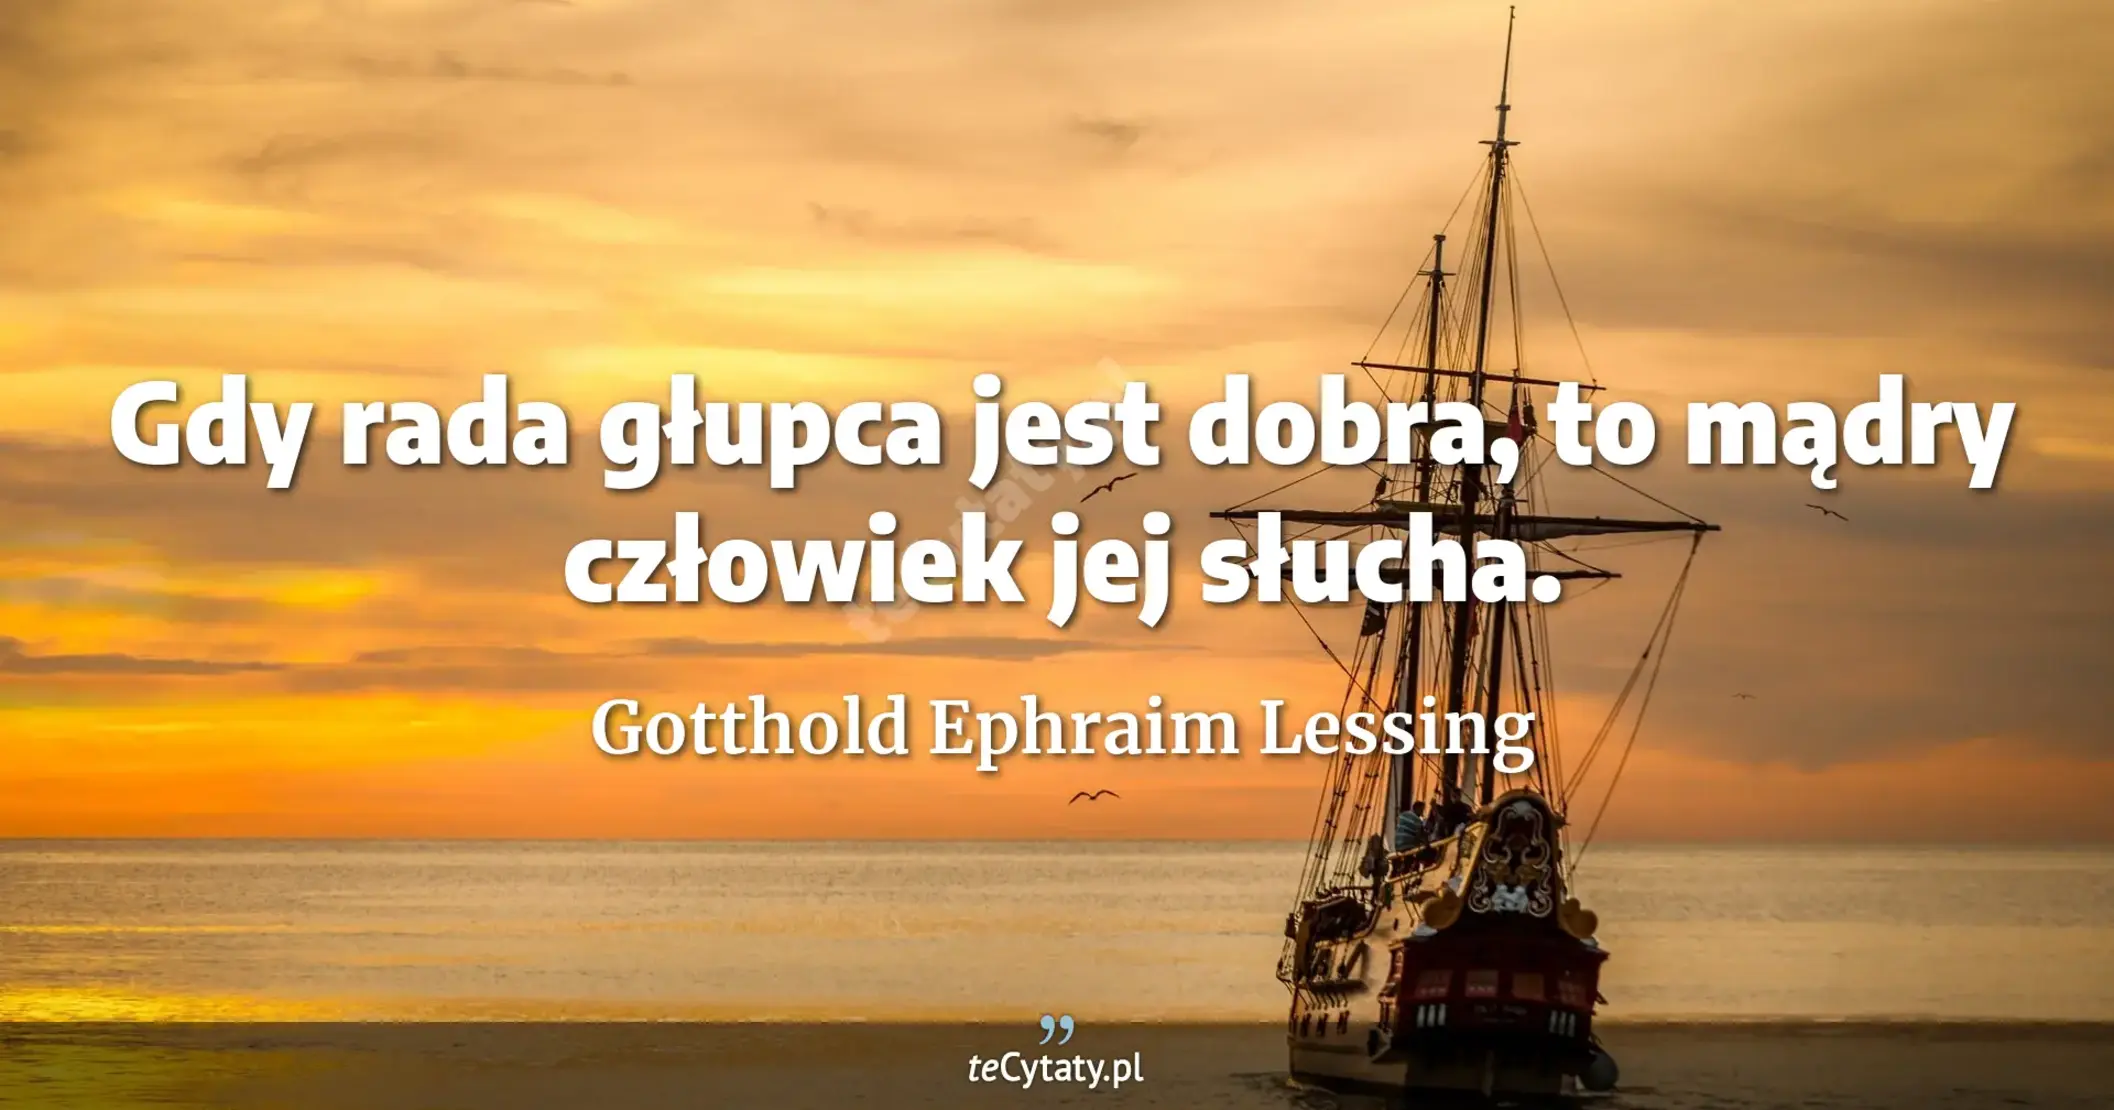 Gdy rada głupca jest dobra, to mądry człowiek jej słucha. - Gotthold Ephraim Lessing